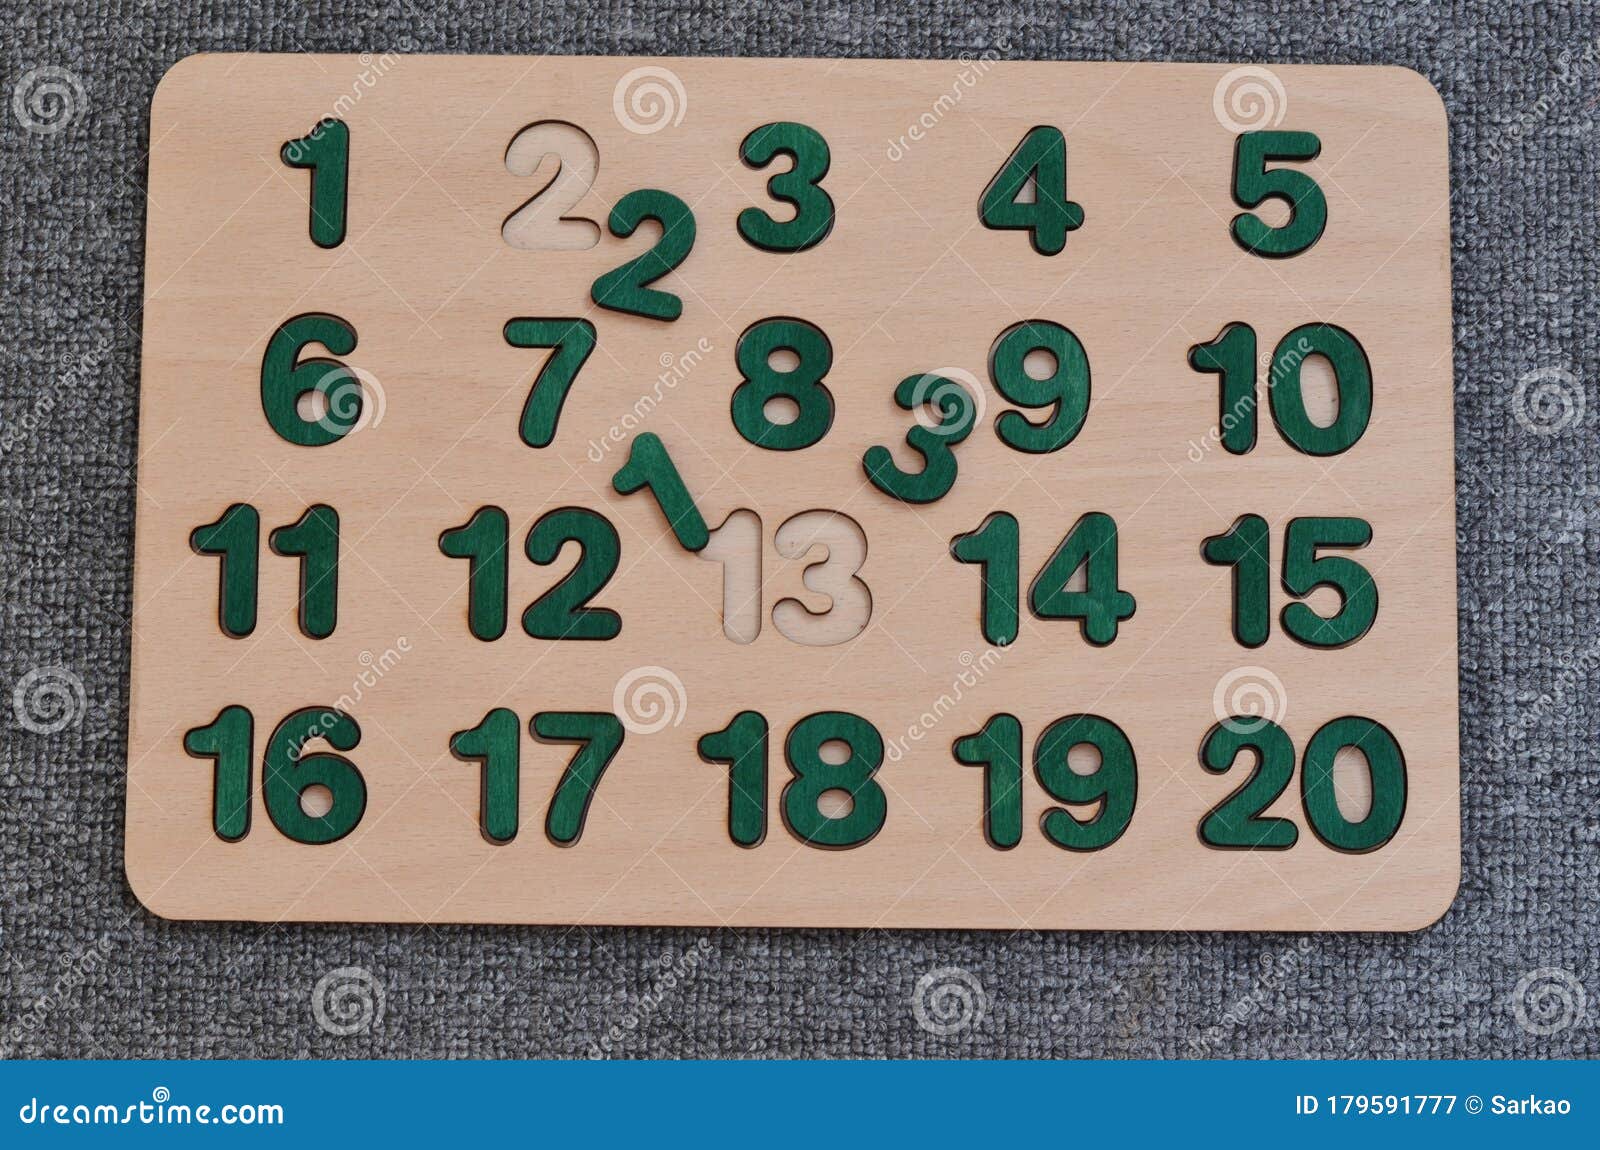 Montessori: Los números